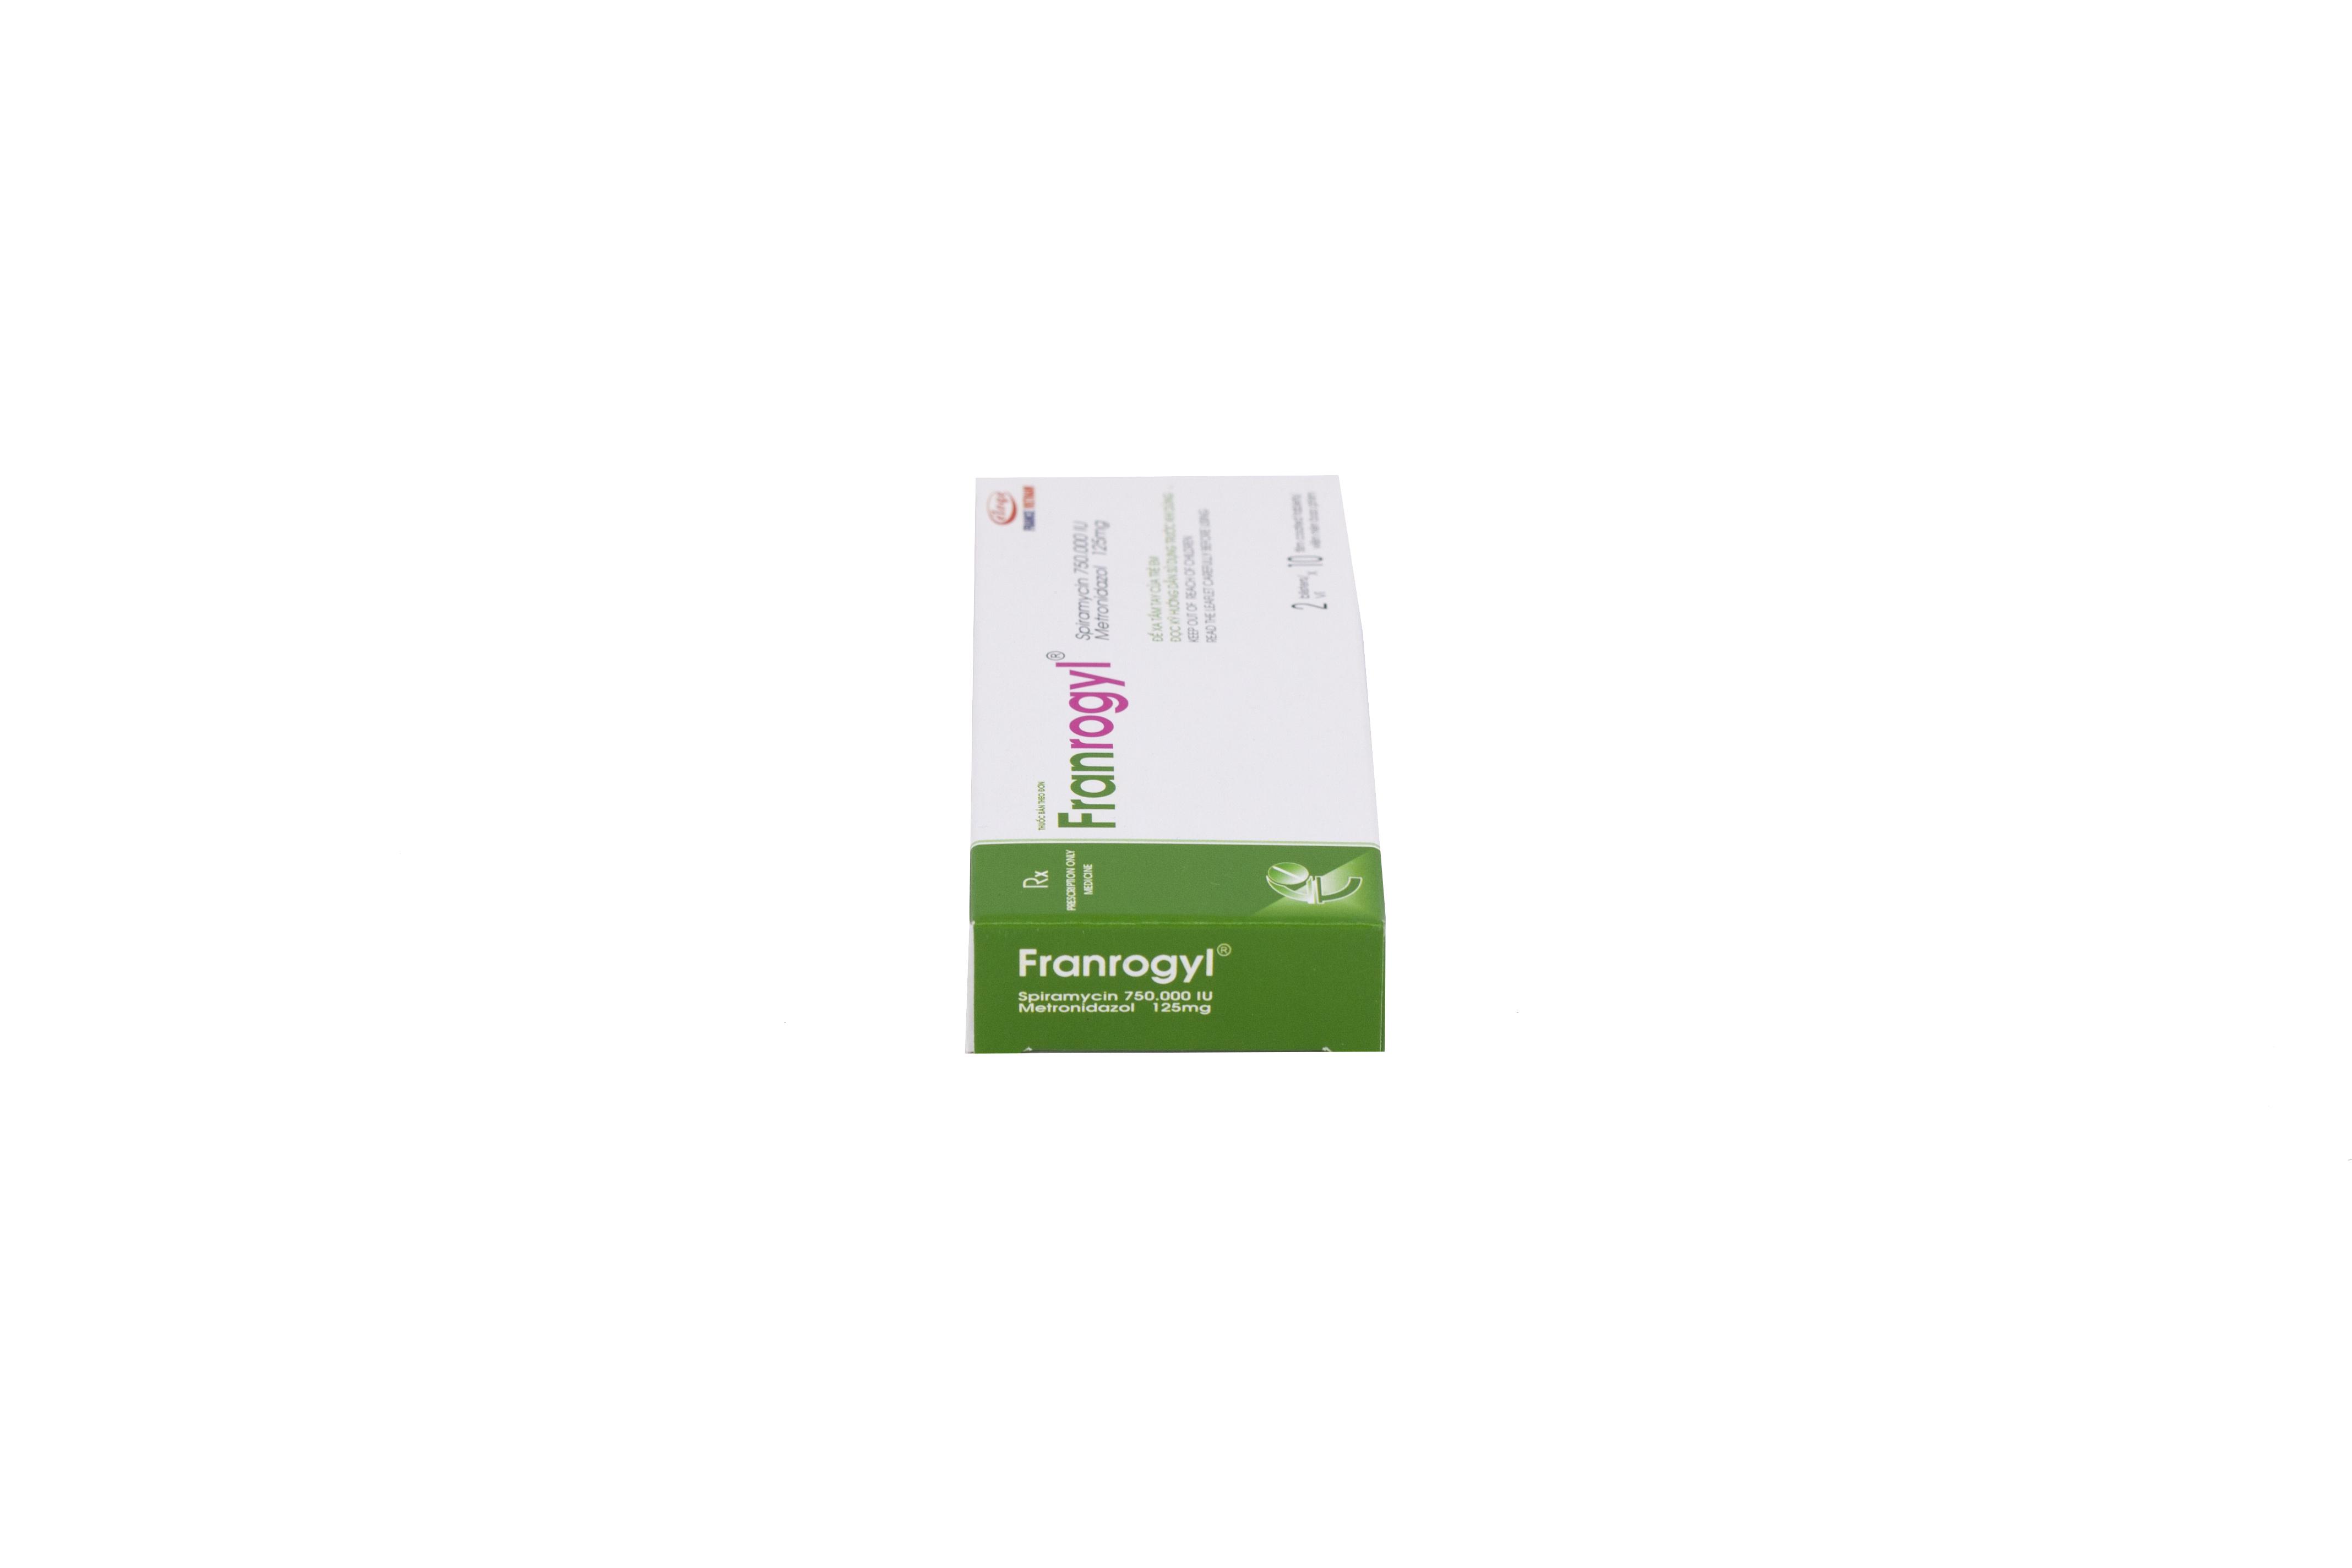 Franrogyl (Metronidazole, Spiramycin) Eloge (H/20v)